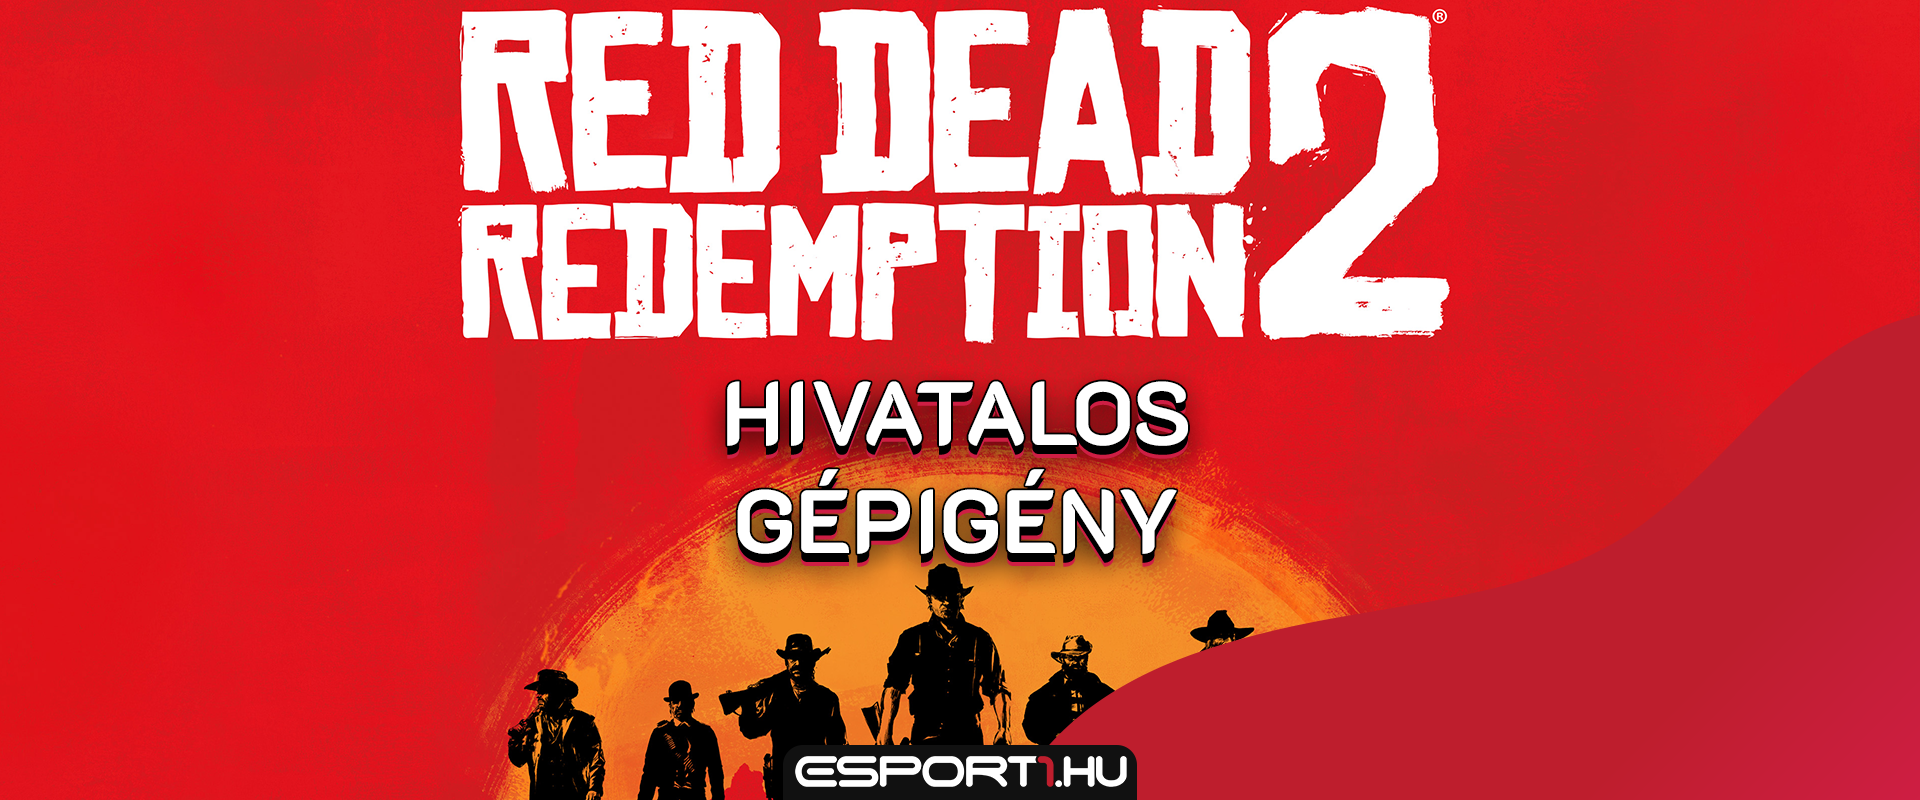 Óriási tárhely kell a Red Dead Redemption 2-nek: itt a hivatalos gépigény!